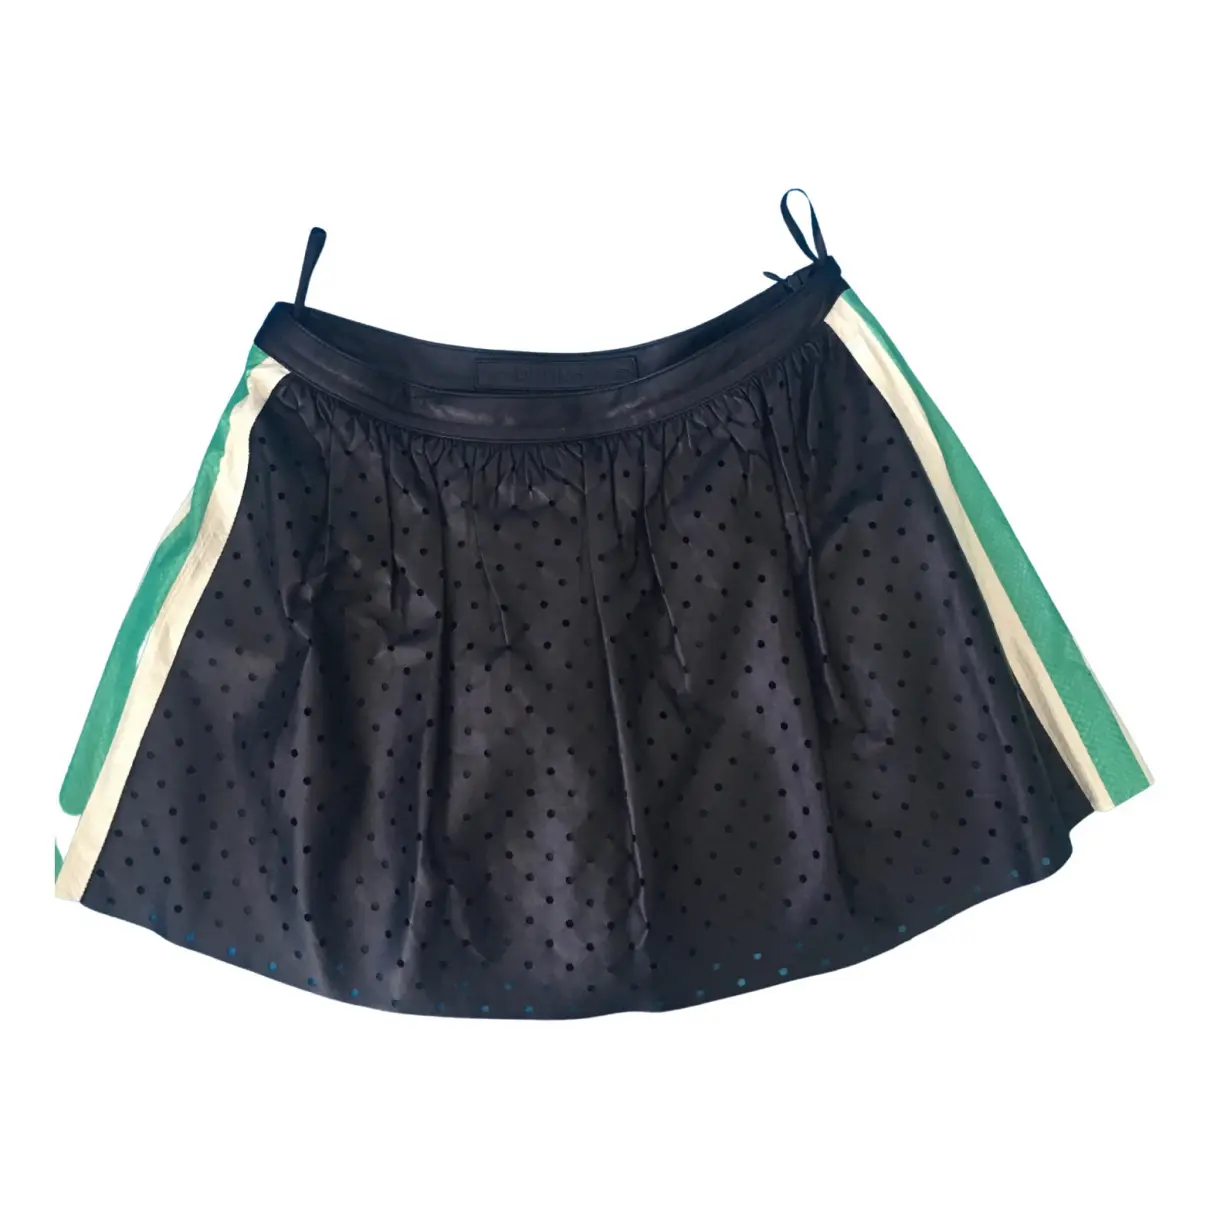 Leather mini skirt Drome